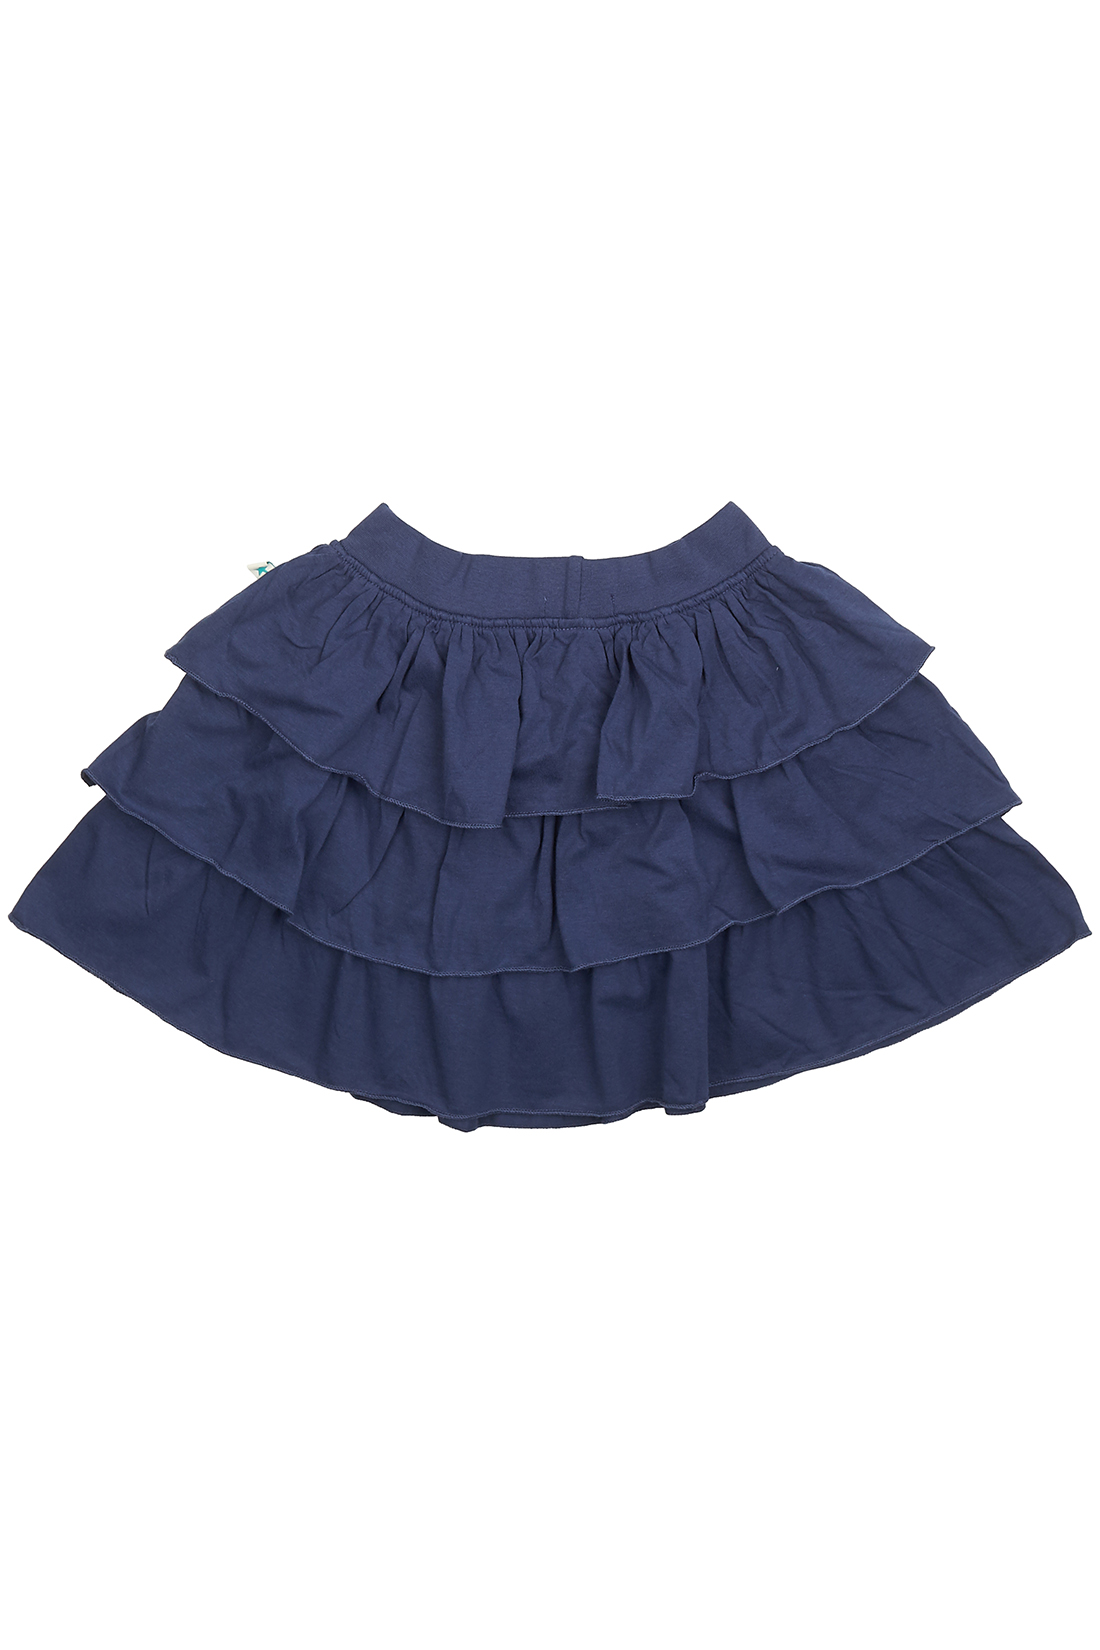 Юбка для девочки (арт. baon BK478004), размер 98-104, цвет синий Юбка для девочки (арт. baon BK478004) - фото 3